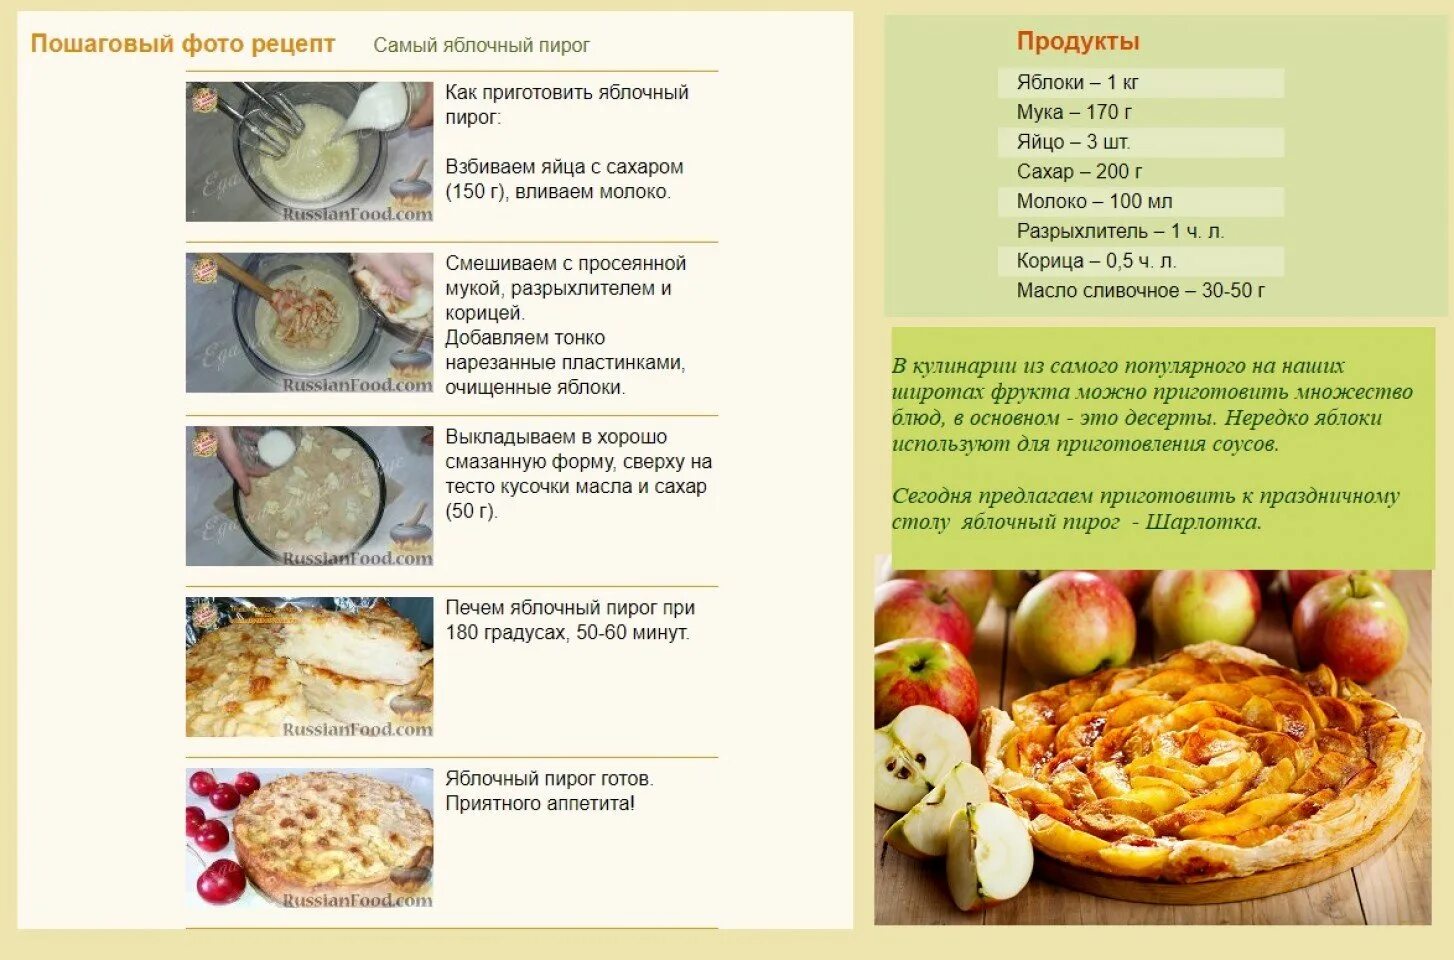 Шарлотка рецепт теста классический. Технологическая карта приготовления пирога шарлотка. Шарлотка с яблоками рецепт картинка. Поэтапное приготовление шарлотки. Технологическая карта шарлотка с яблоками.